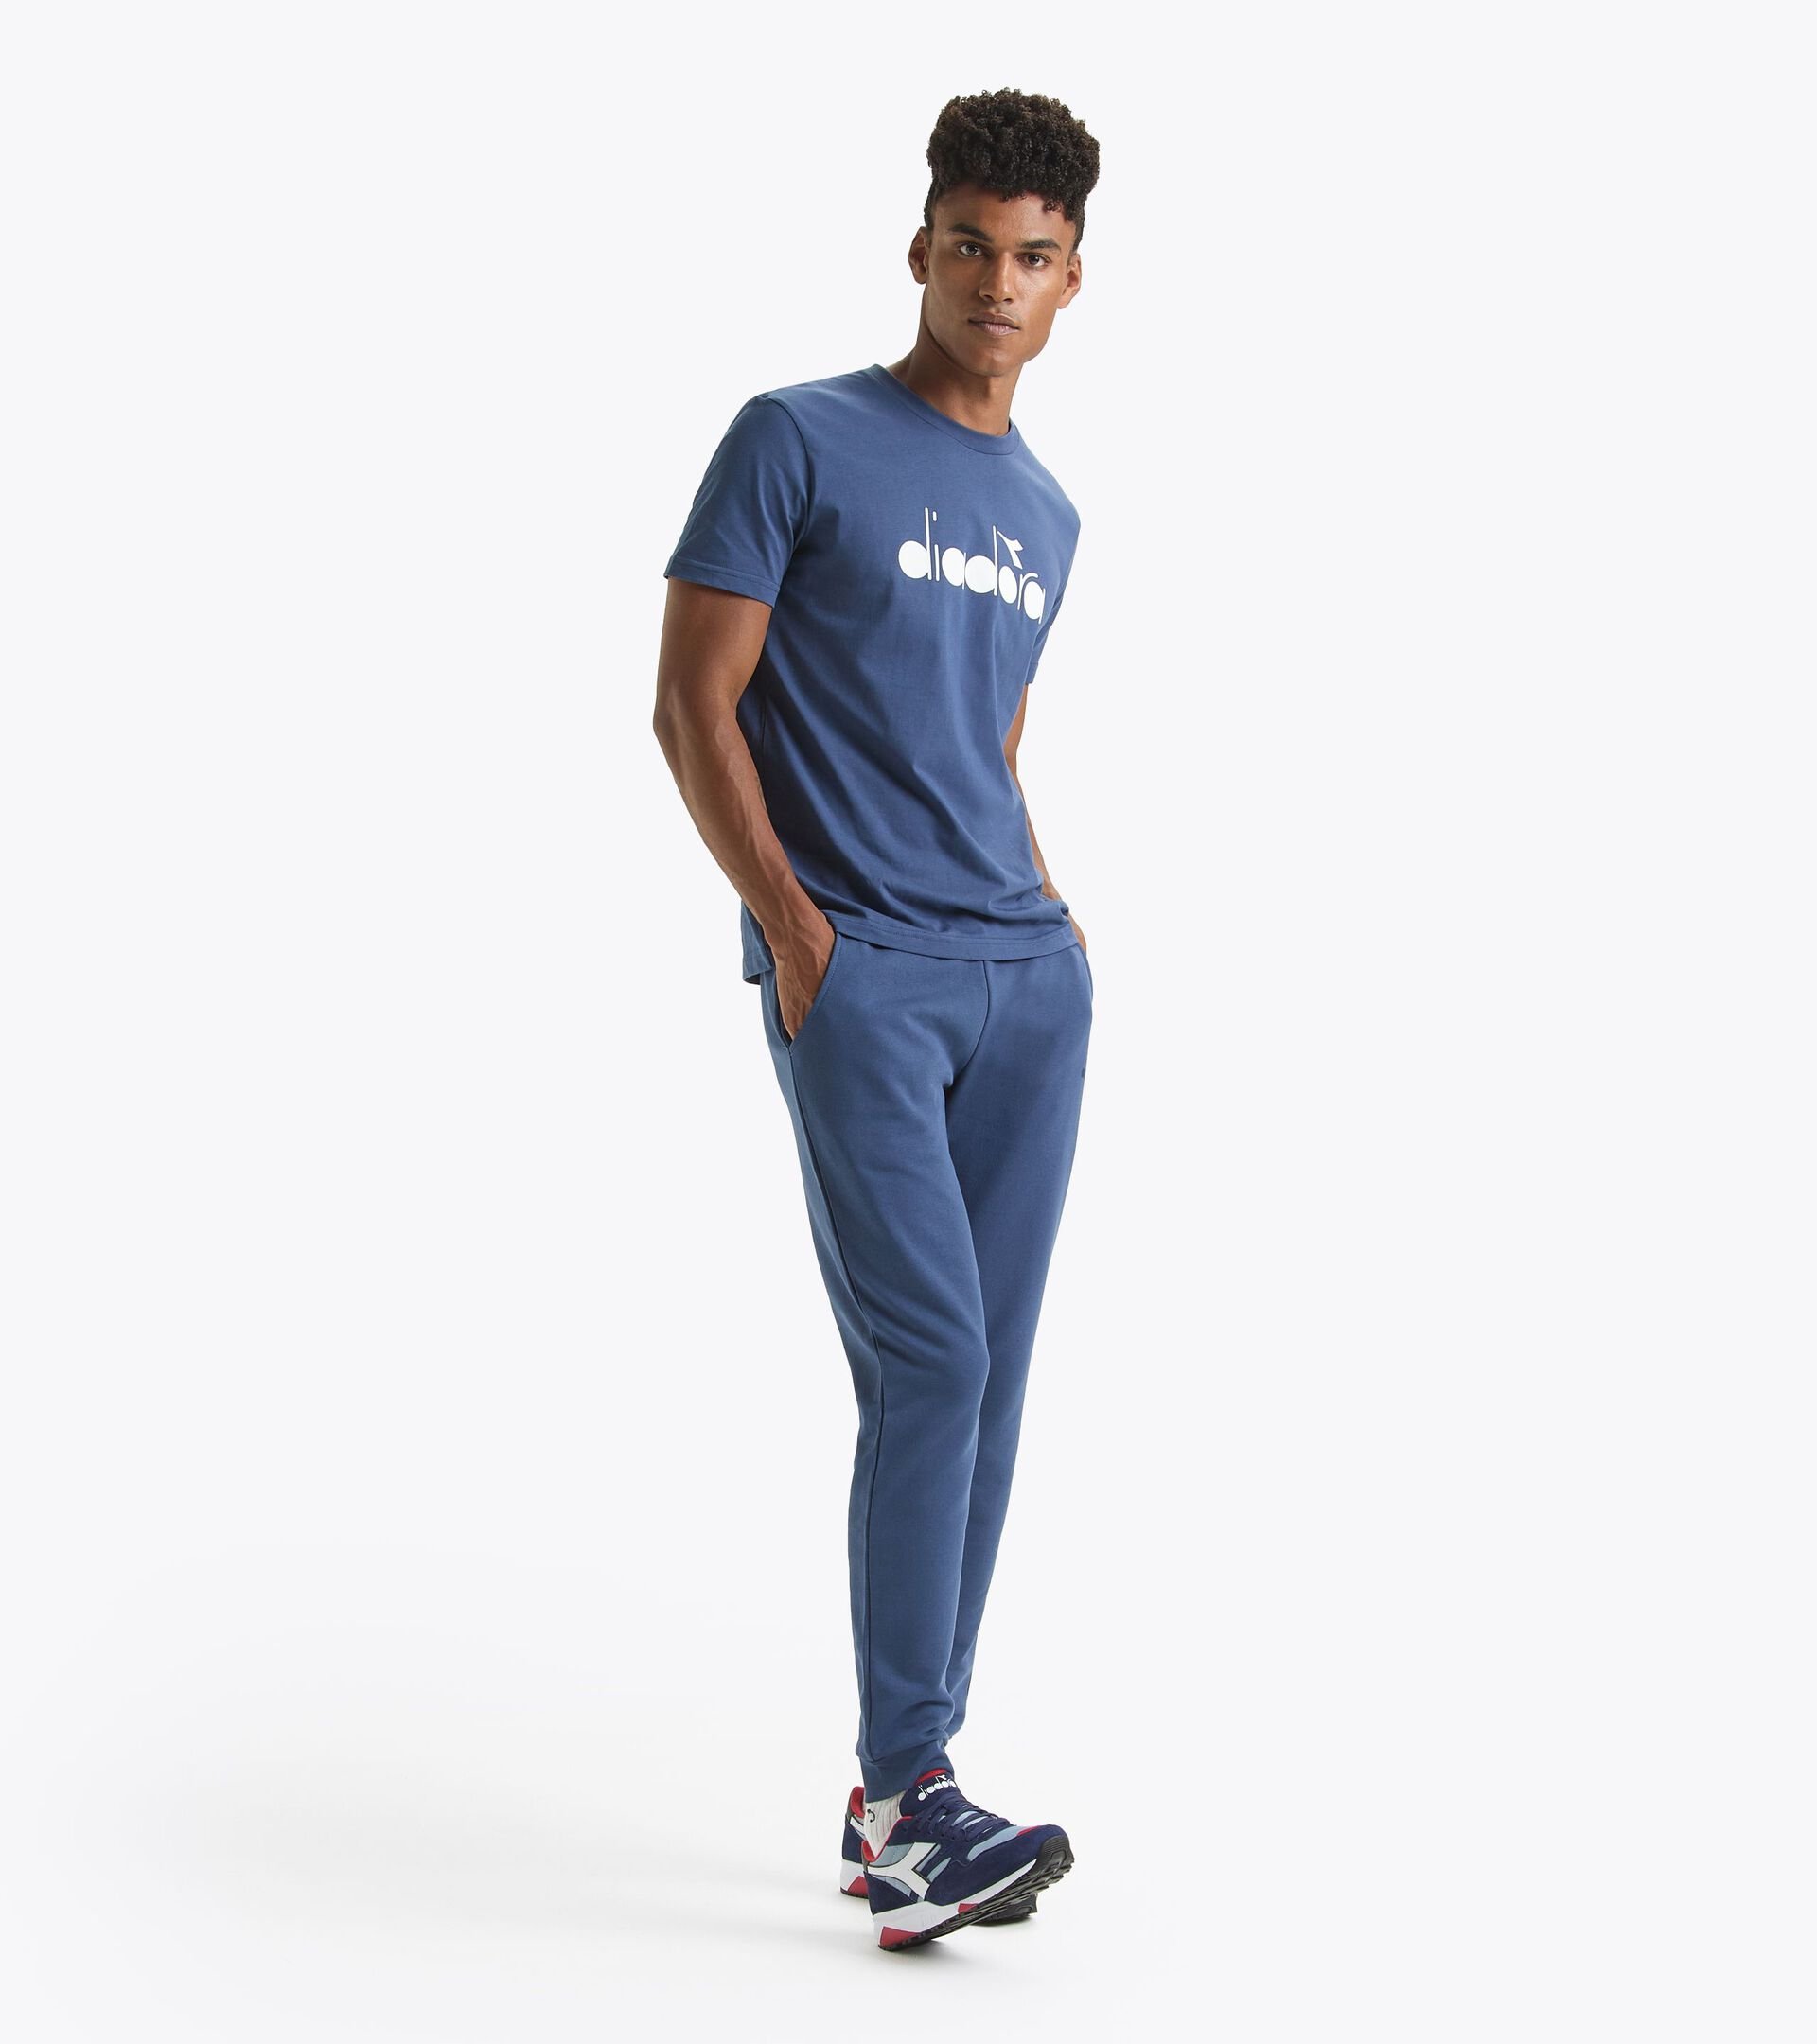 Pantalón deportivo - Made in Italy - Gender neutral PANTS LOGO OCEANA - Diadora